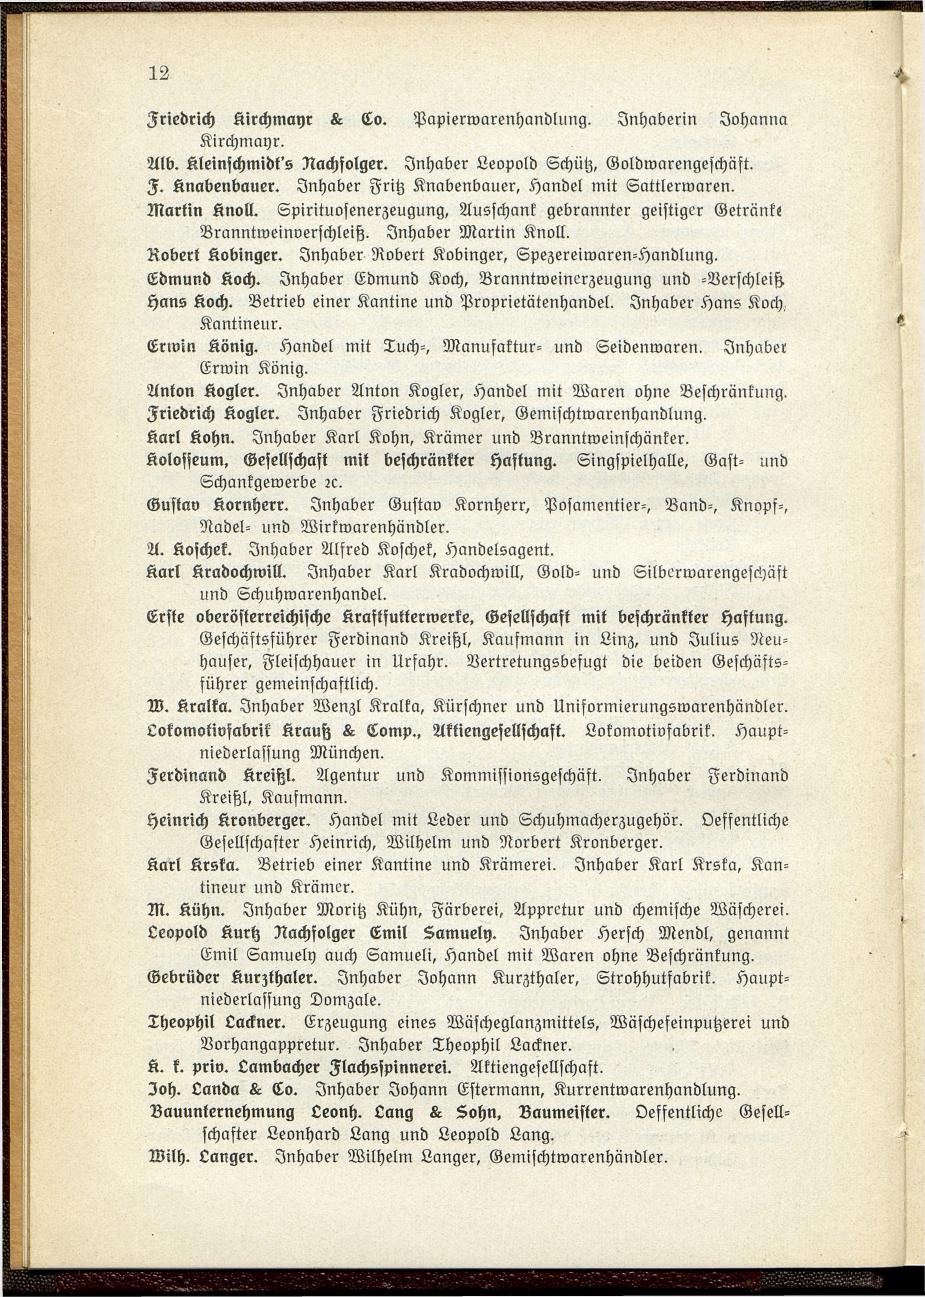 Verzeichnis der handelsgerichtlich protokollierten Firmen sowie der registrierten Erwerbs- und Wirtschafts-Genossenschaften in Oberösterreich 1914 - Seite 14